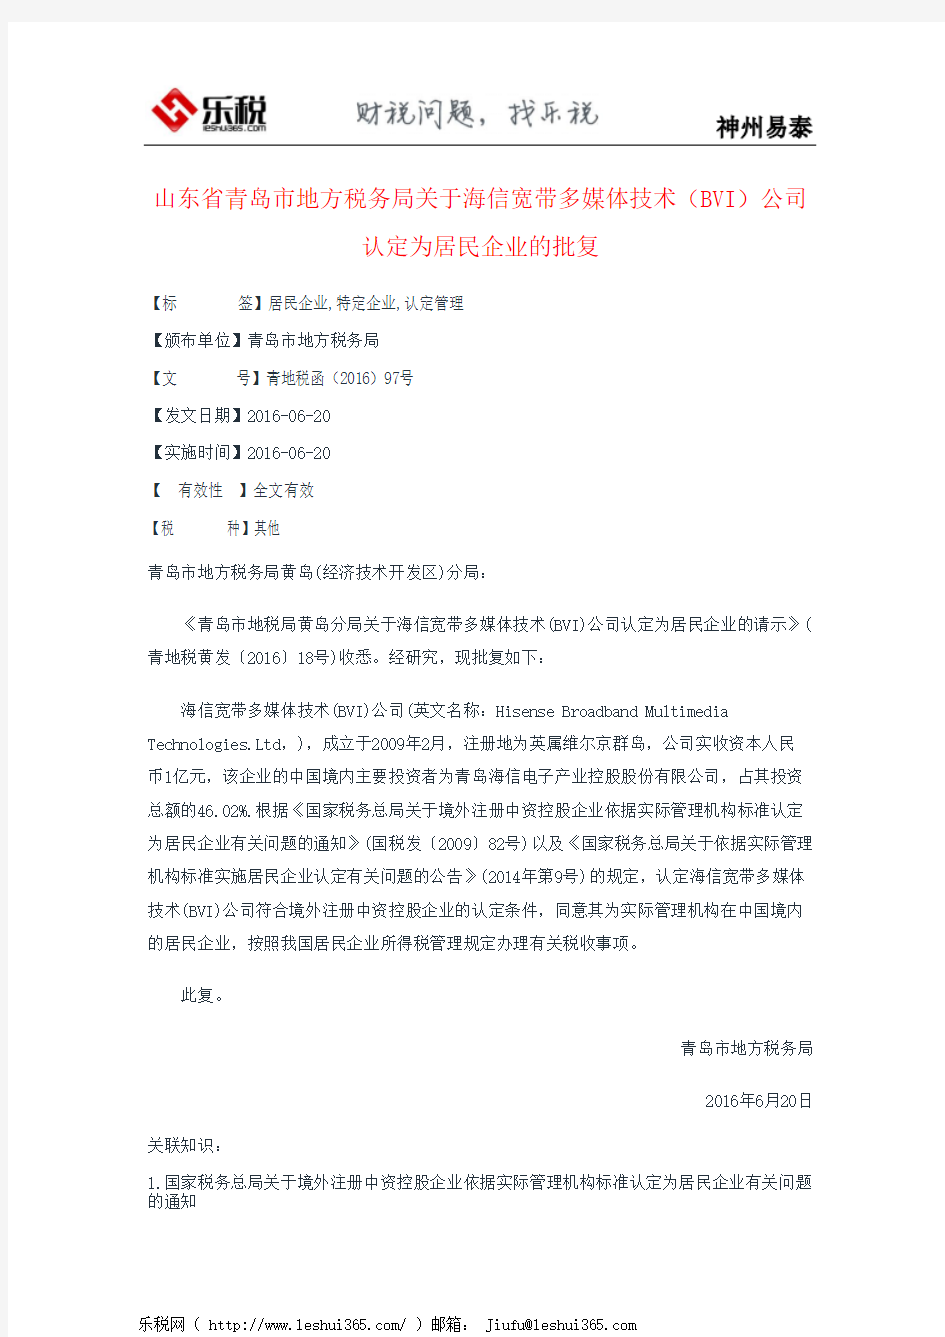 山东省青岛市地方税务局关于海信宽带多媒体技术(BVI)公司认定为